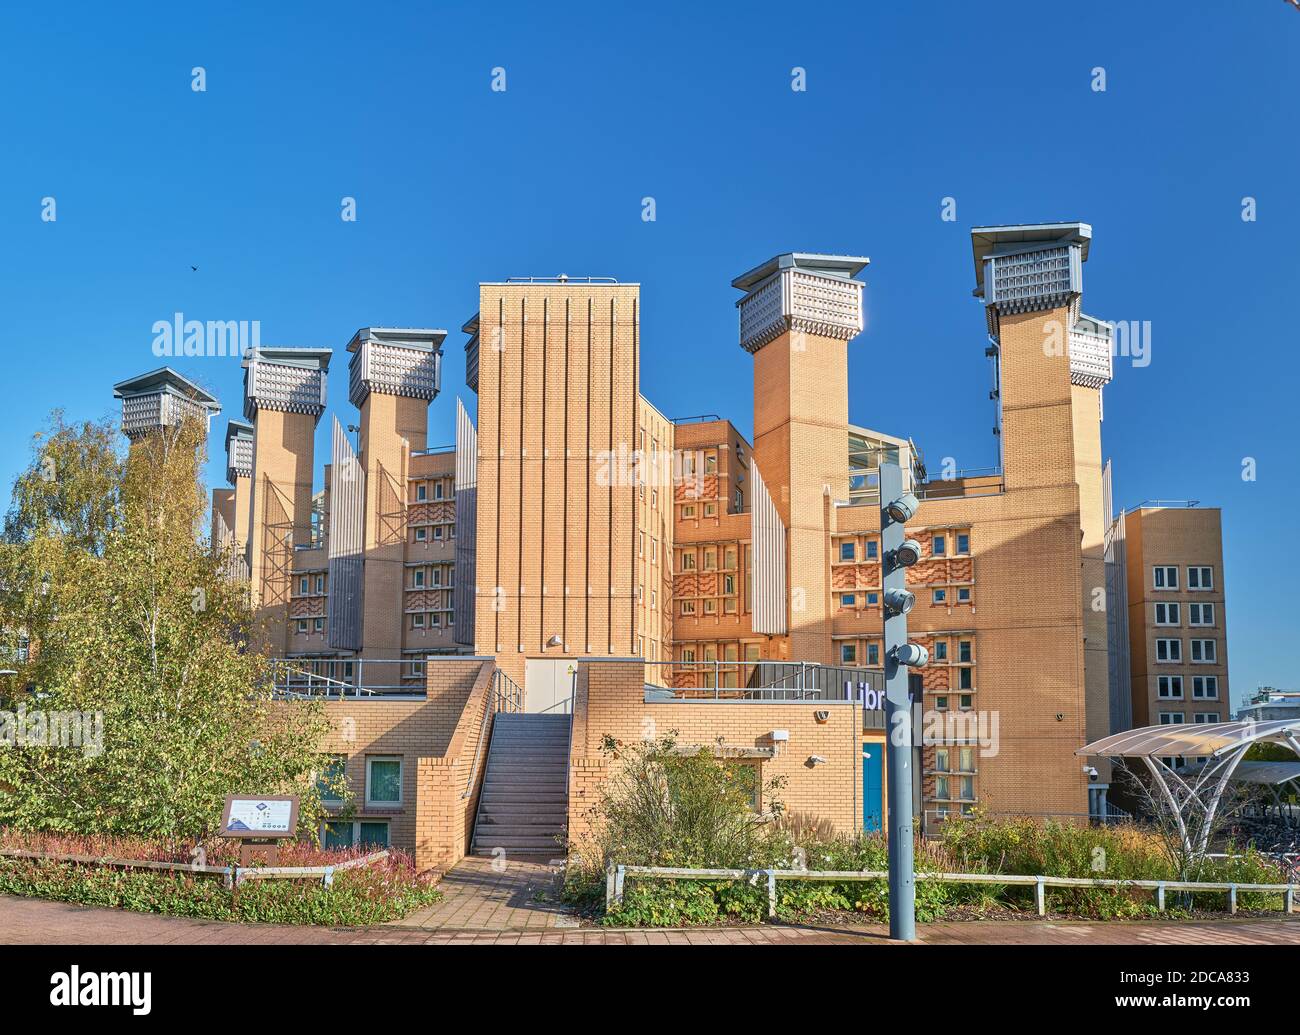 Lanchester Bibliothek, Universität von Coventry, England. Stockfoto